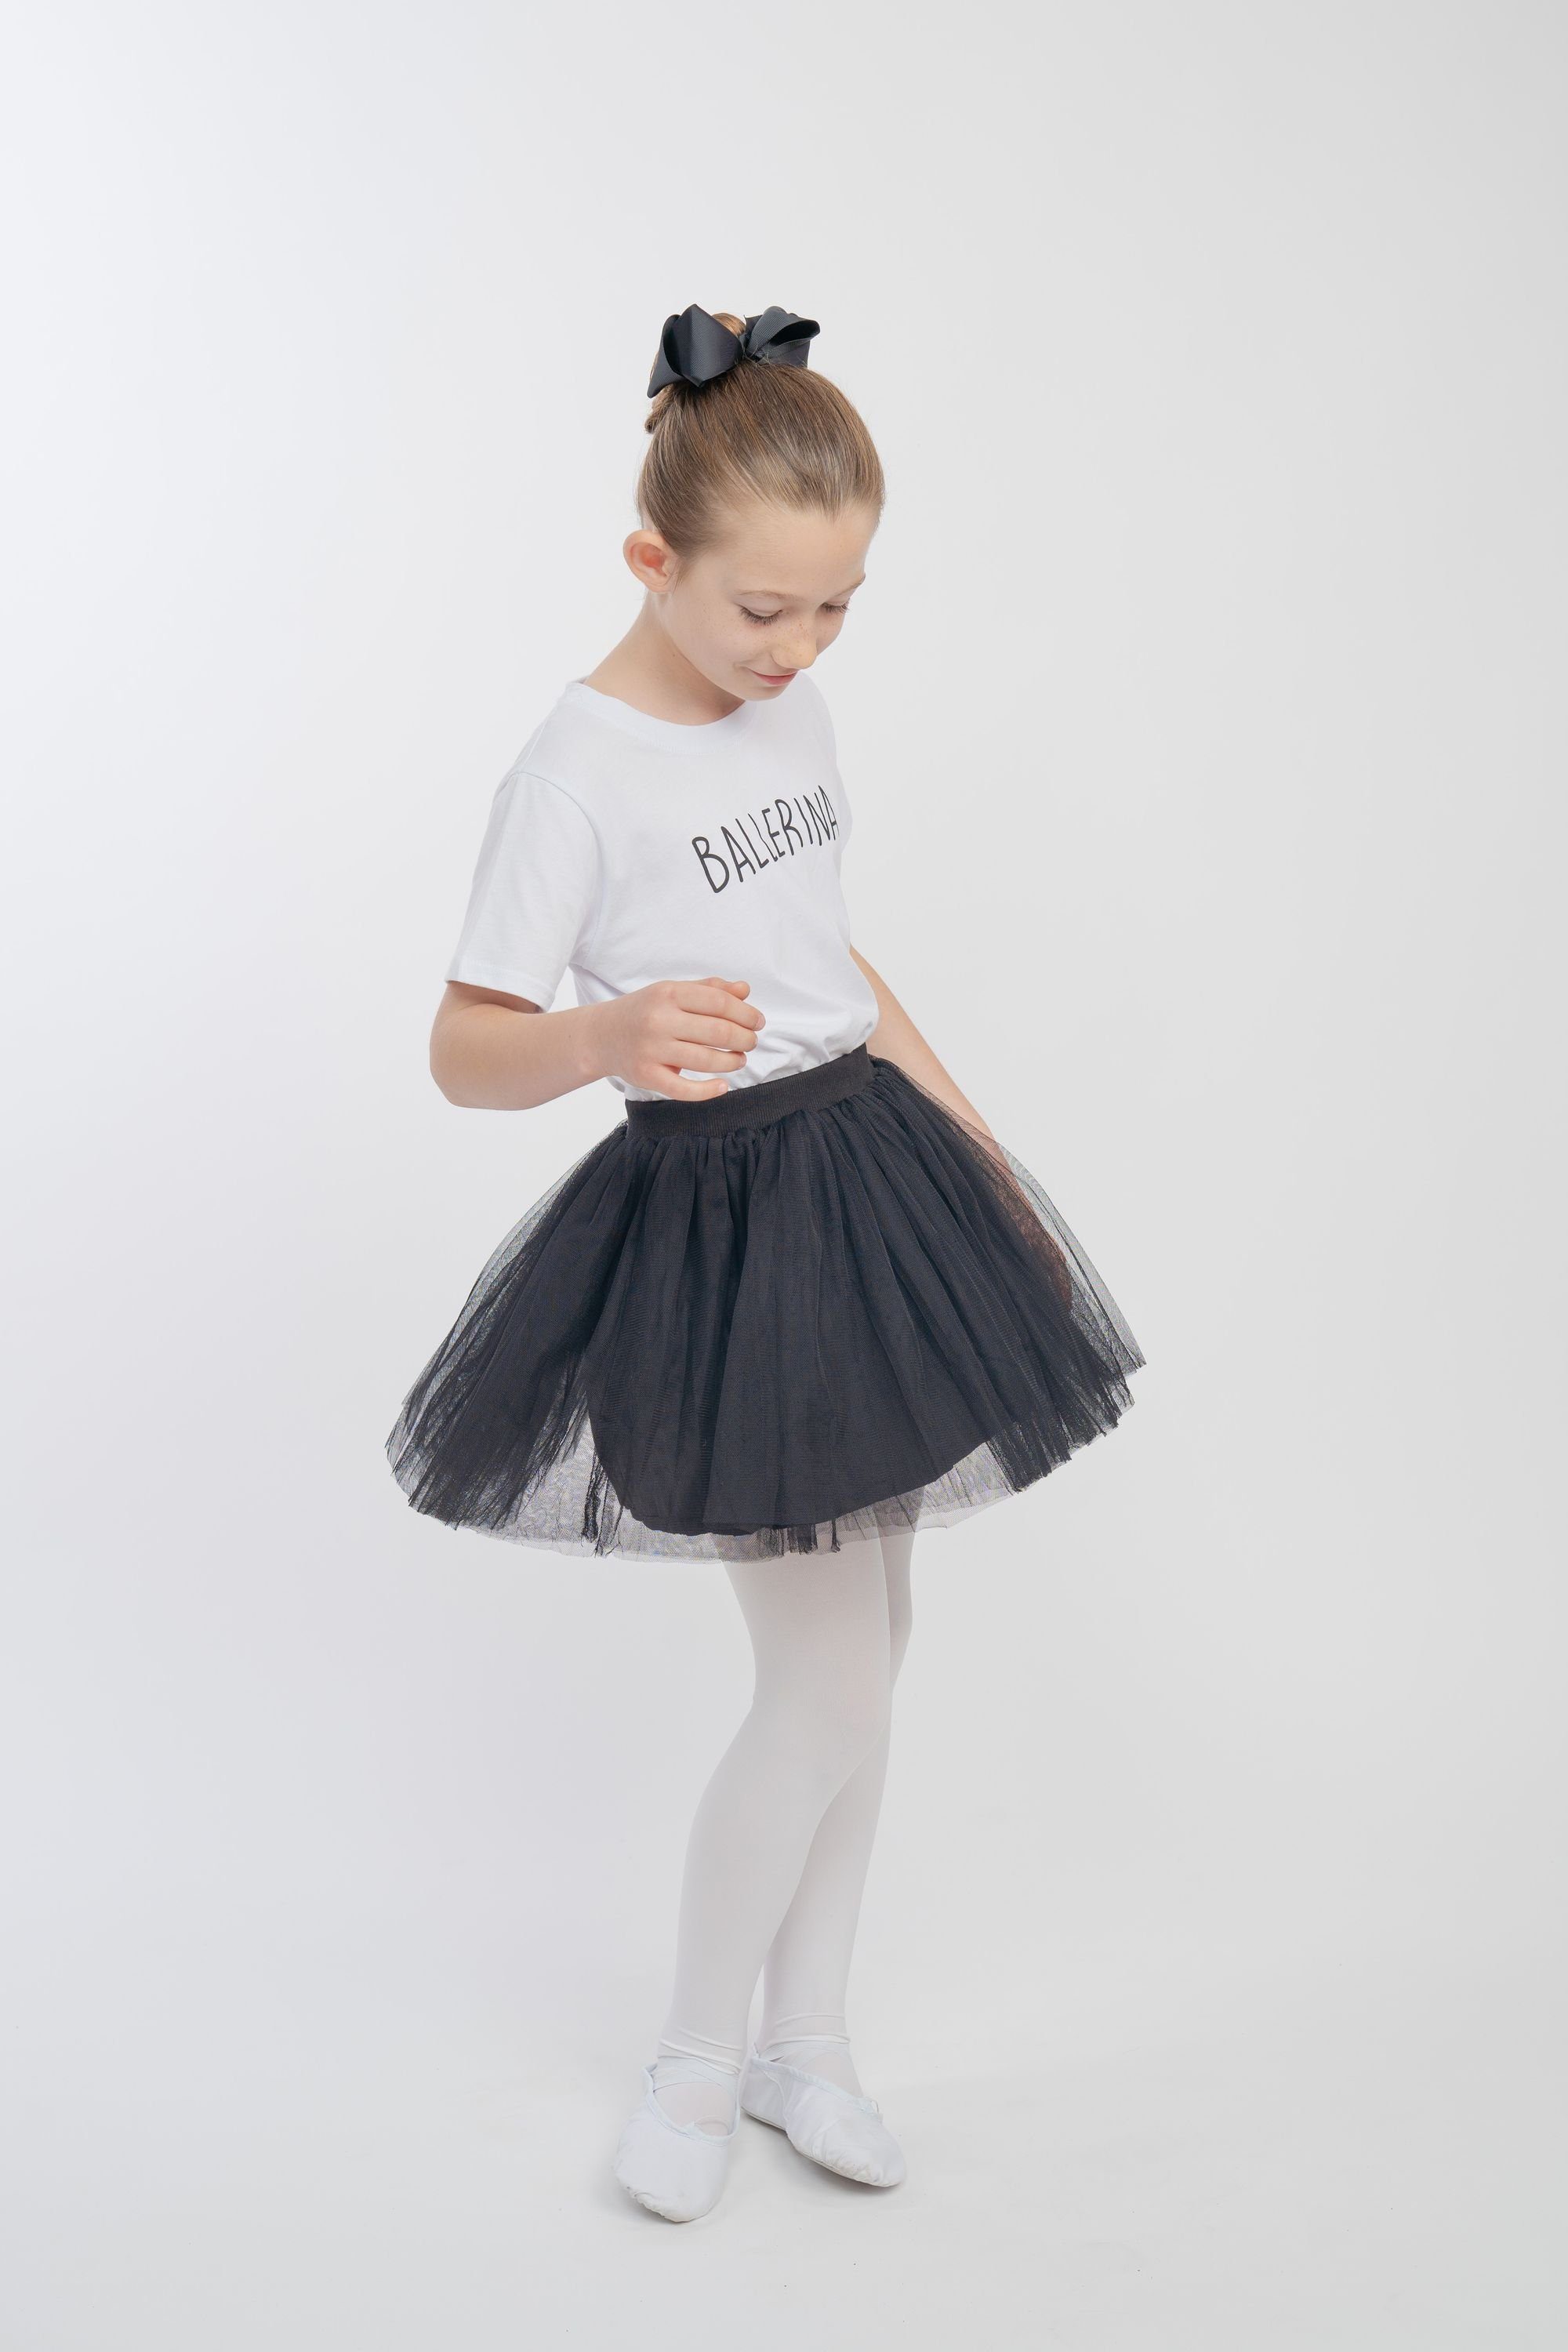 tanzmuster Tüllrock Tüllrock Little Ballerina weichem schwarz Tüll weich blickdichtem mit Unterrock aus besonders